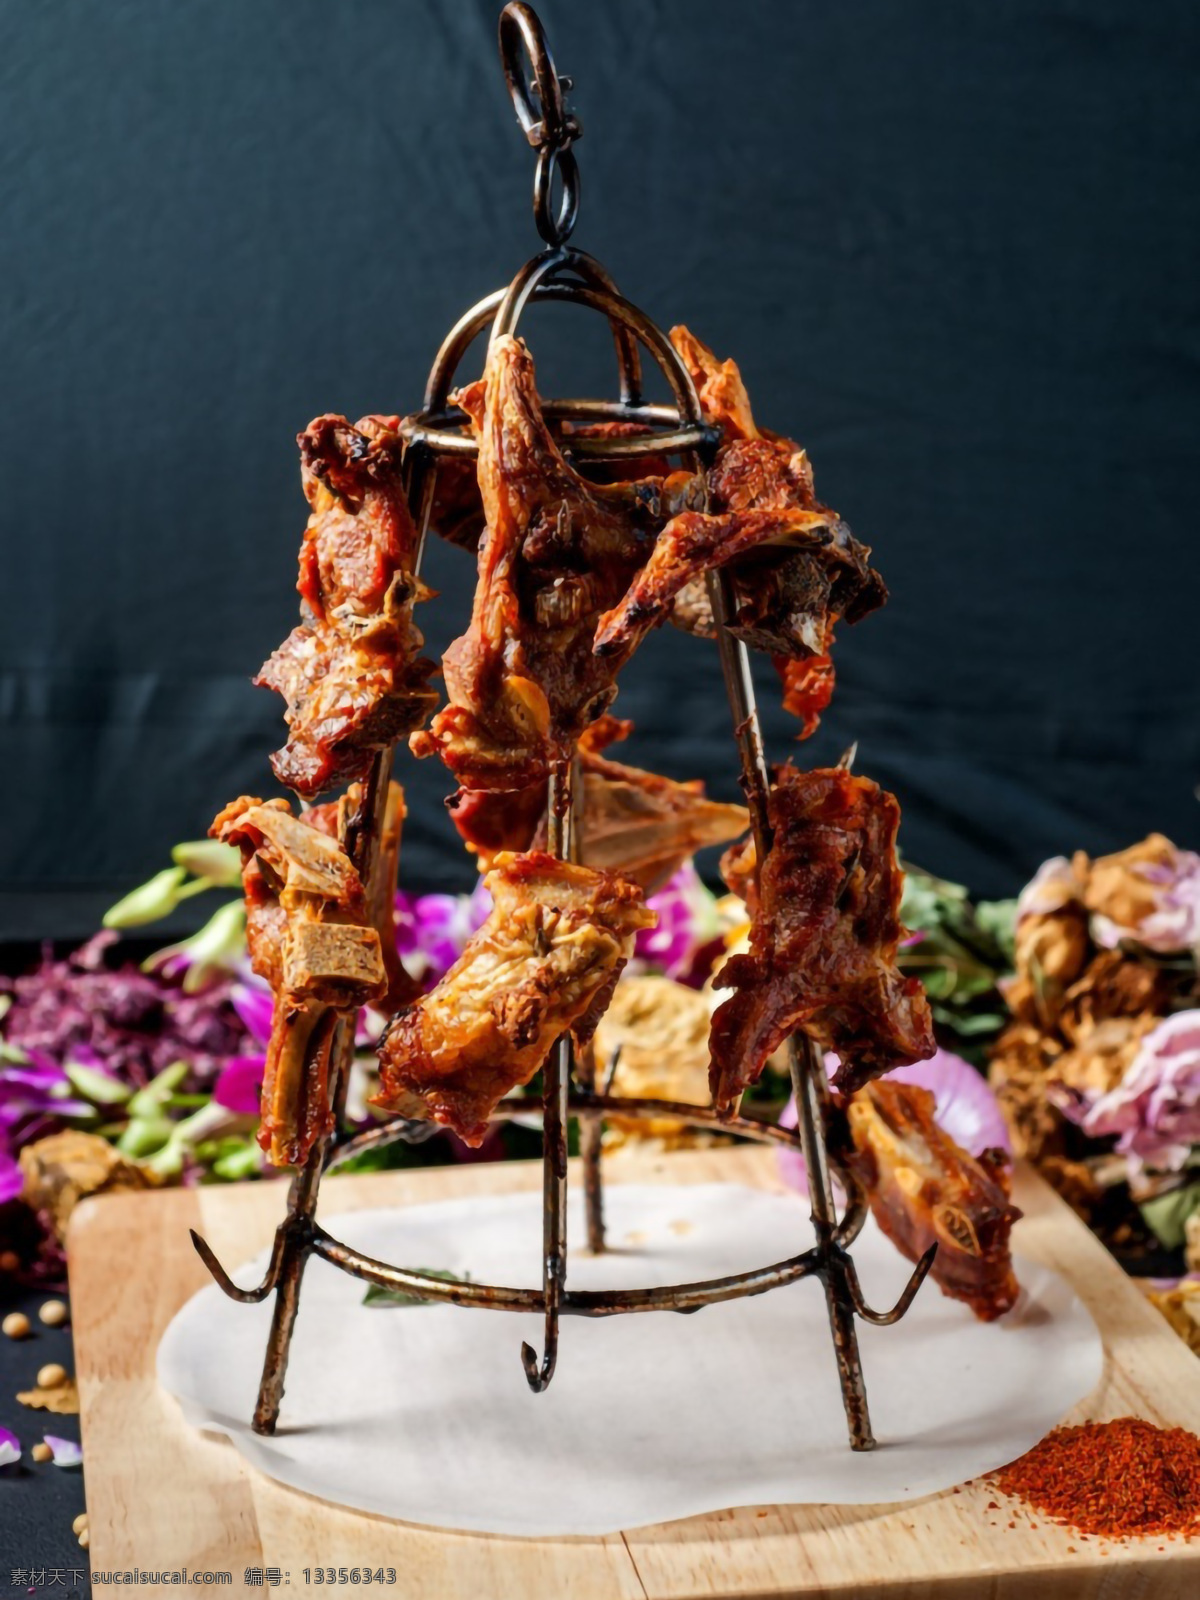 架子肉图片 新疆架子肉 新疆烧烤 新疆美食 新疆特色 馕坑烧烤 馕坑肉 餐饮美食 传统美食